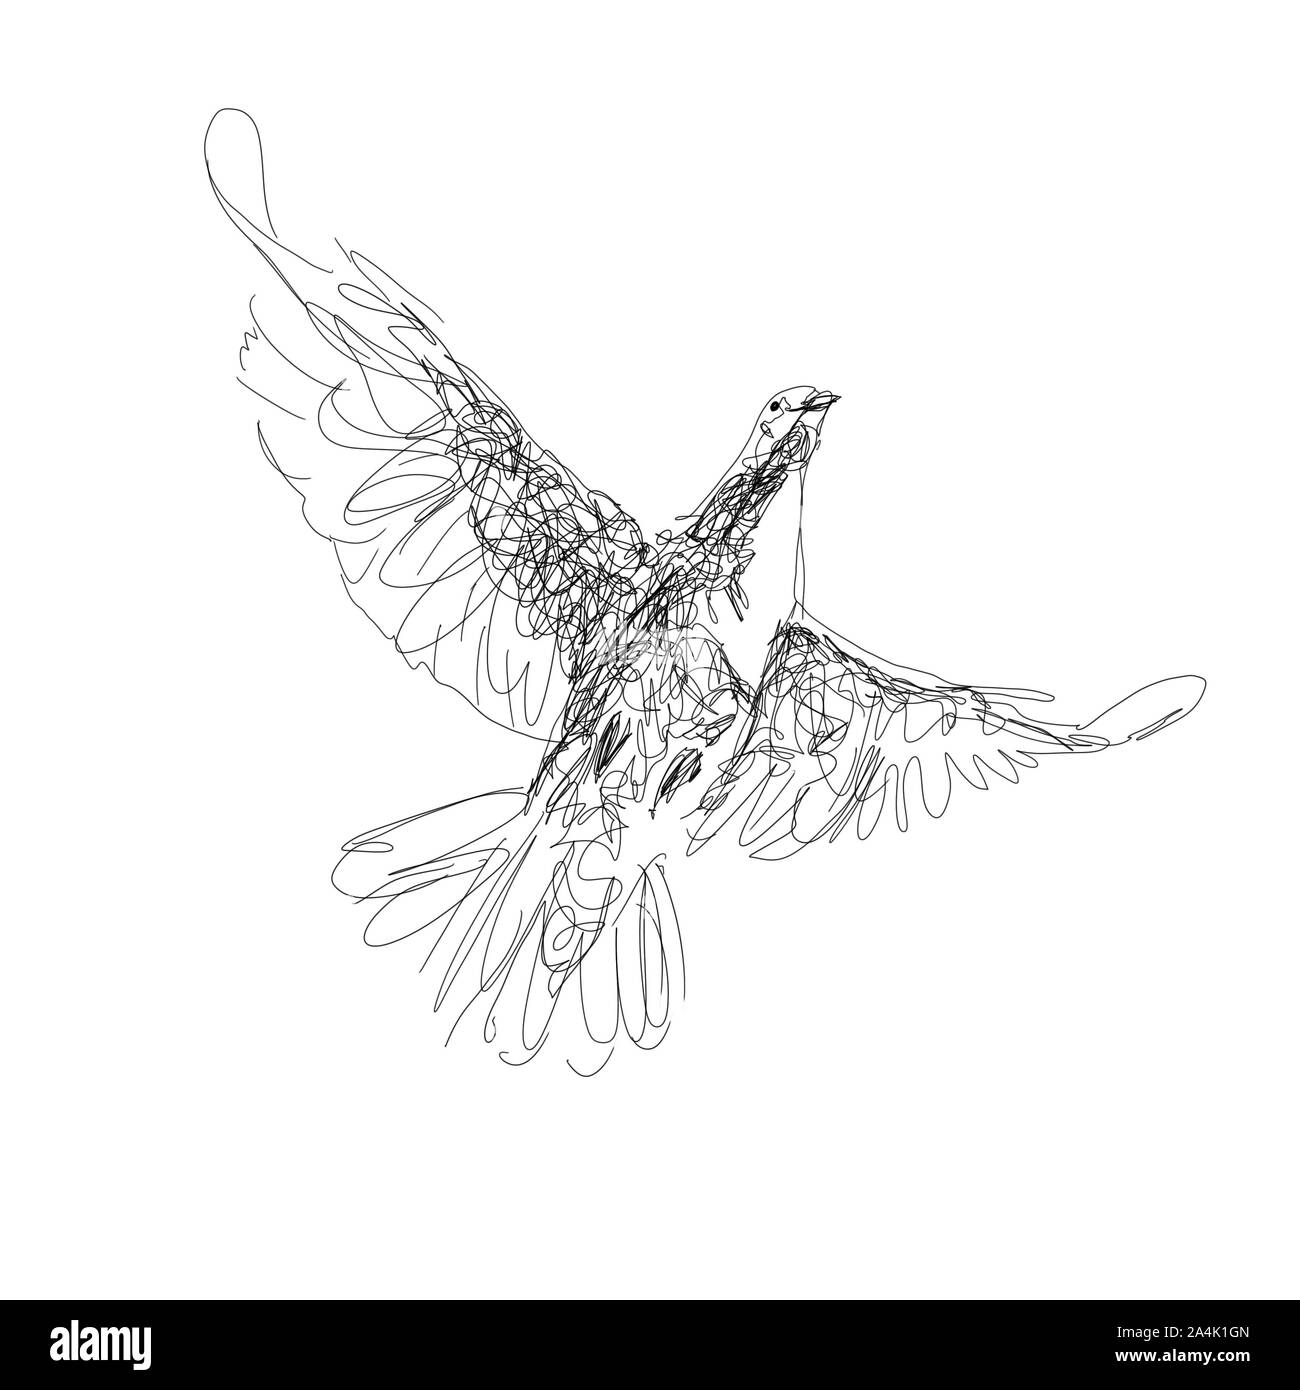 El negro digital sketch, ilustración de la paloma, símbolo del Espíritu Santo, aislado sobre fondo blanco. Foto de stock